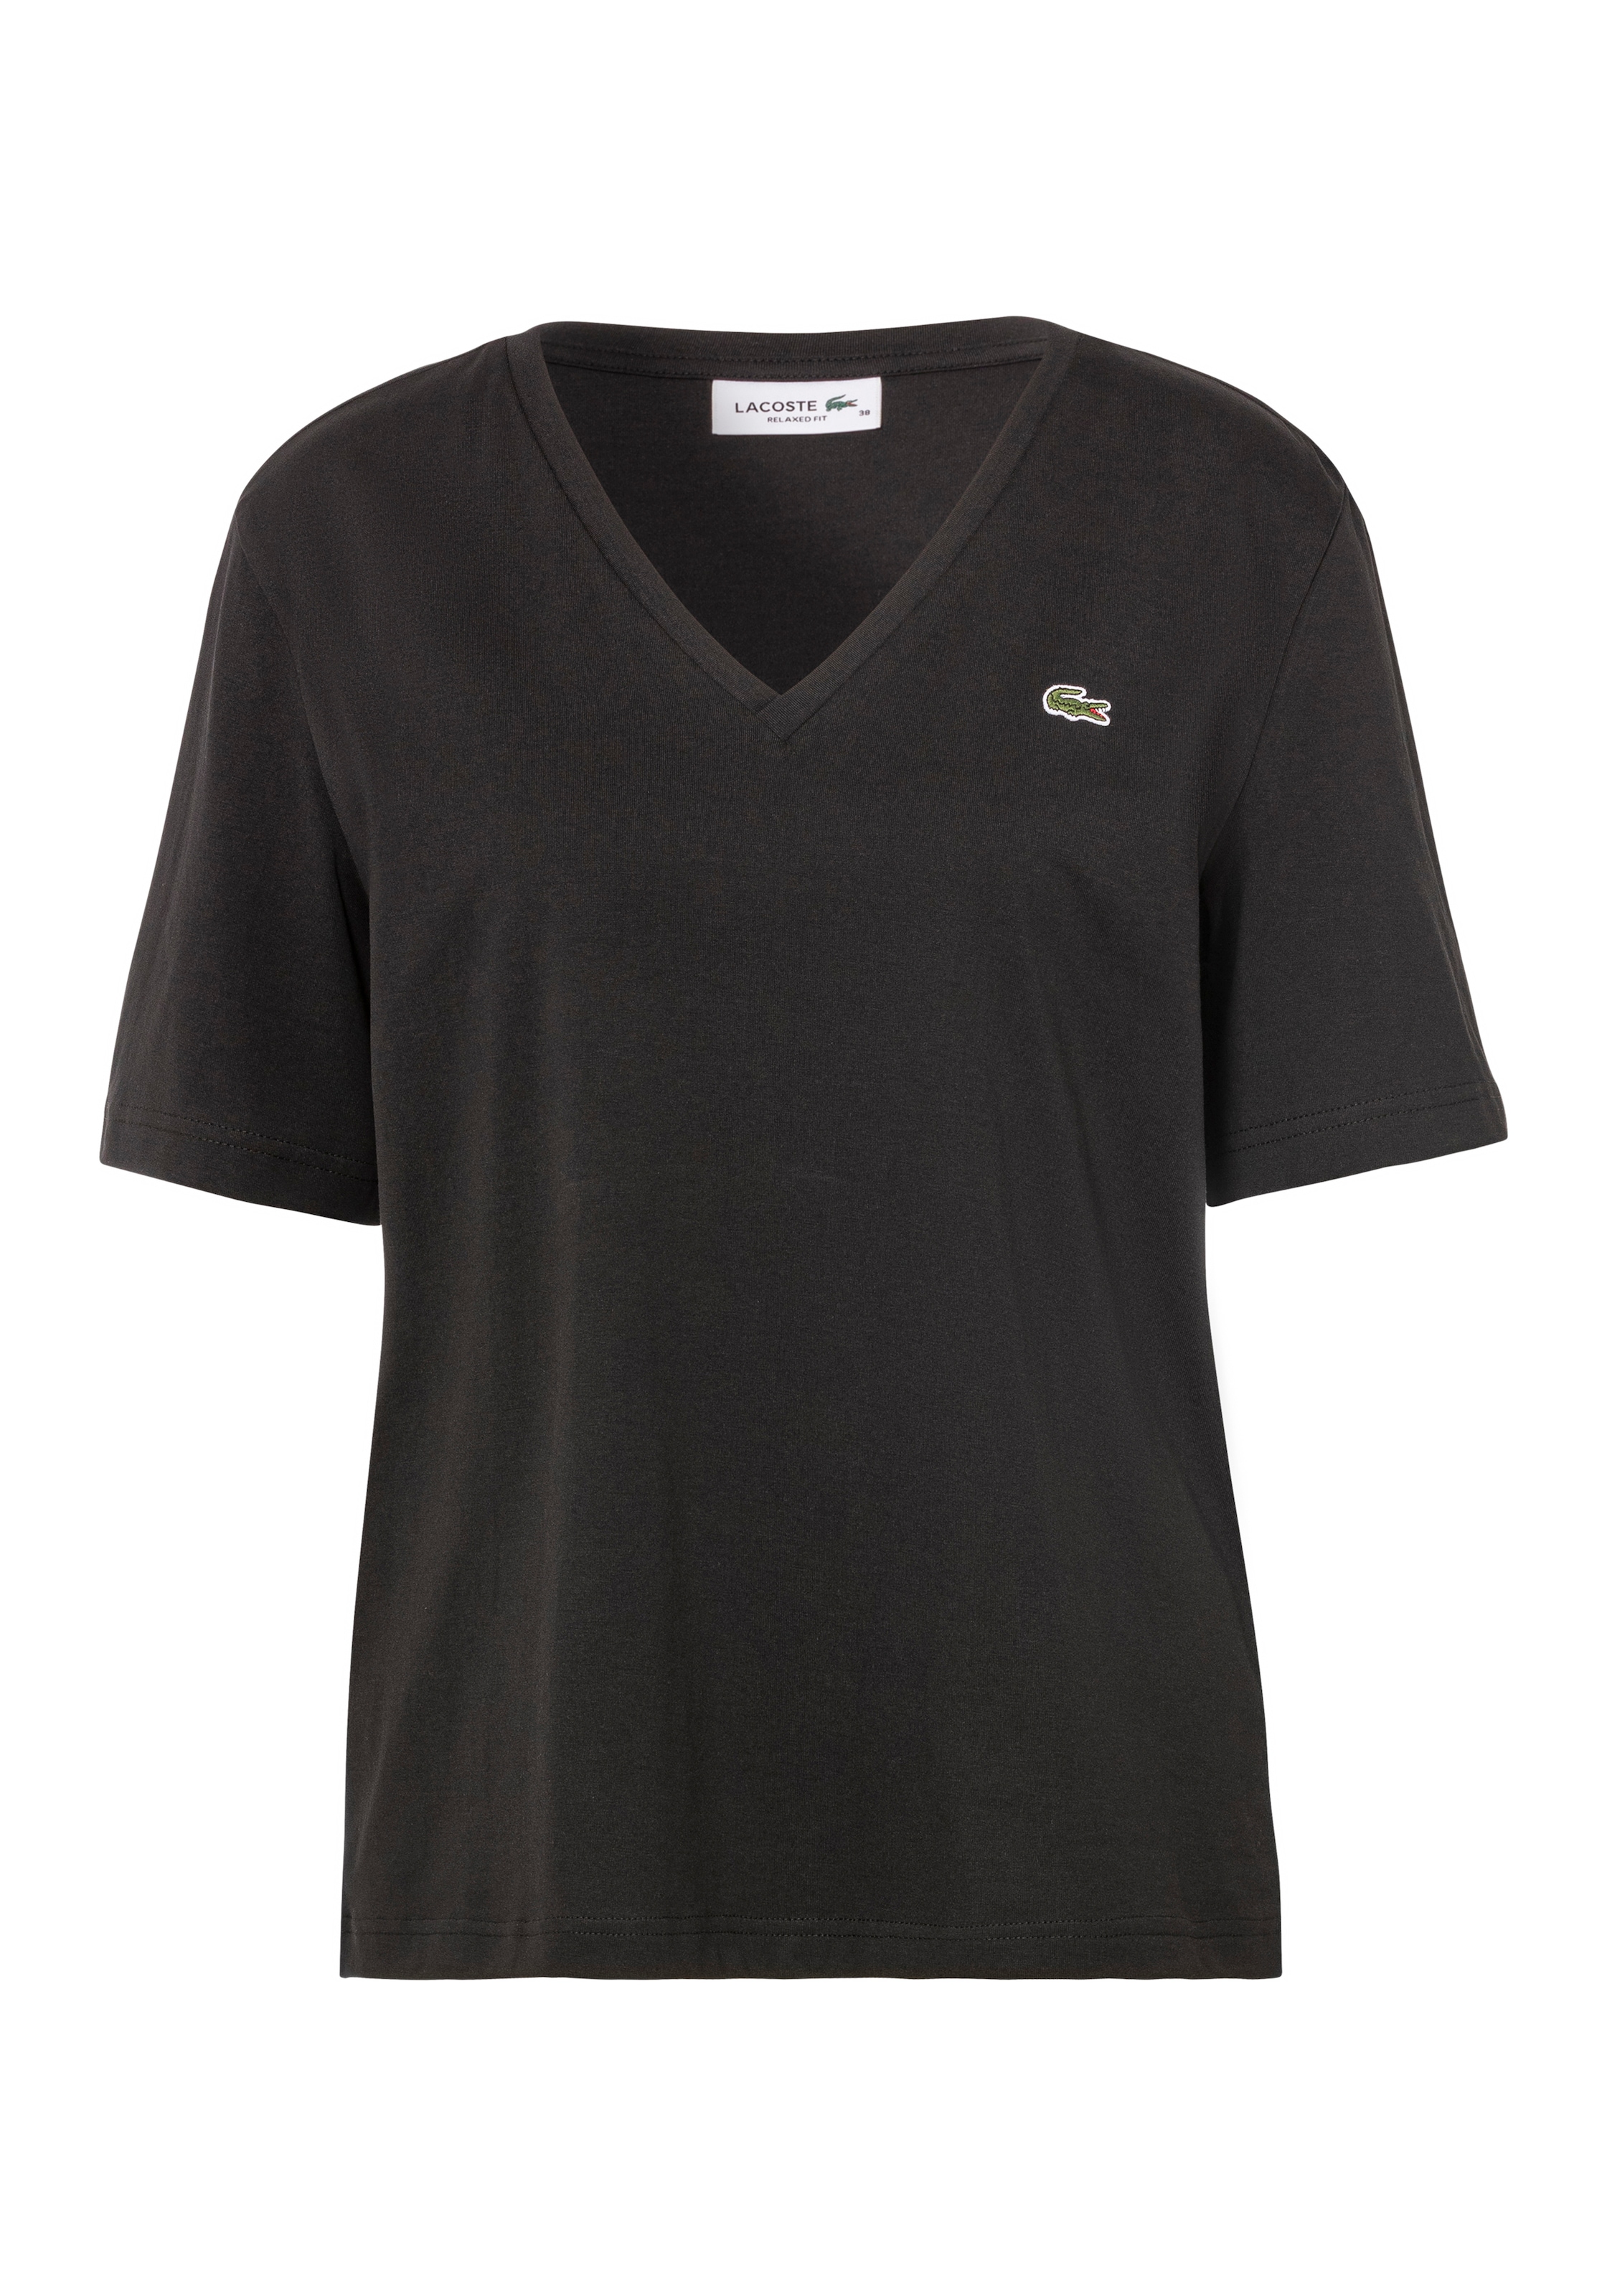 Lacoste T-Shirt, mit Lacoste Logo auf der Brust im OTTO Online Shop